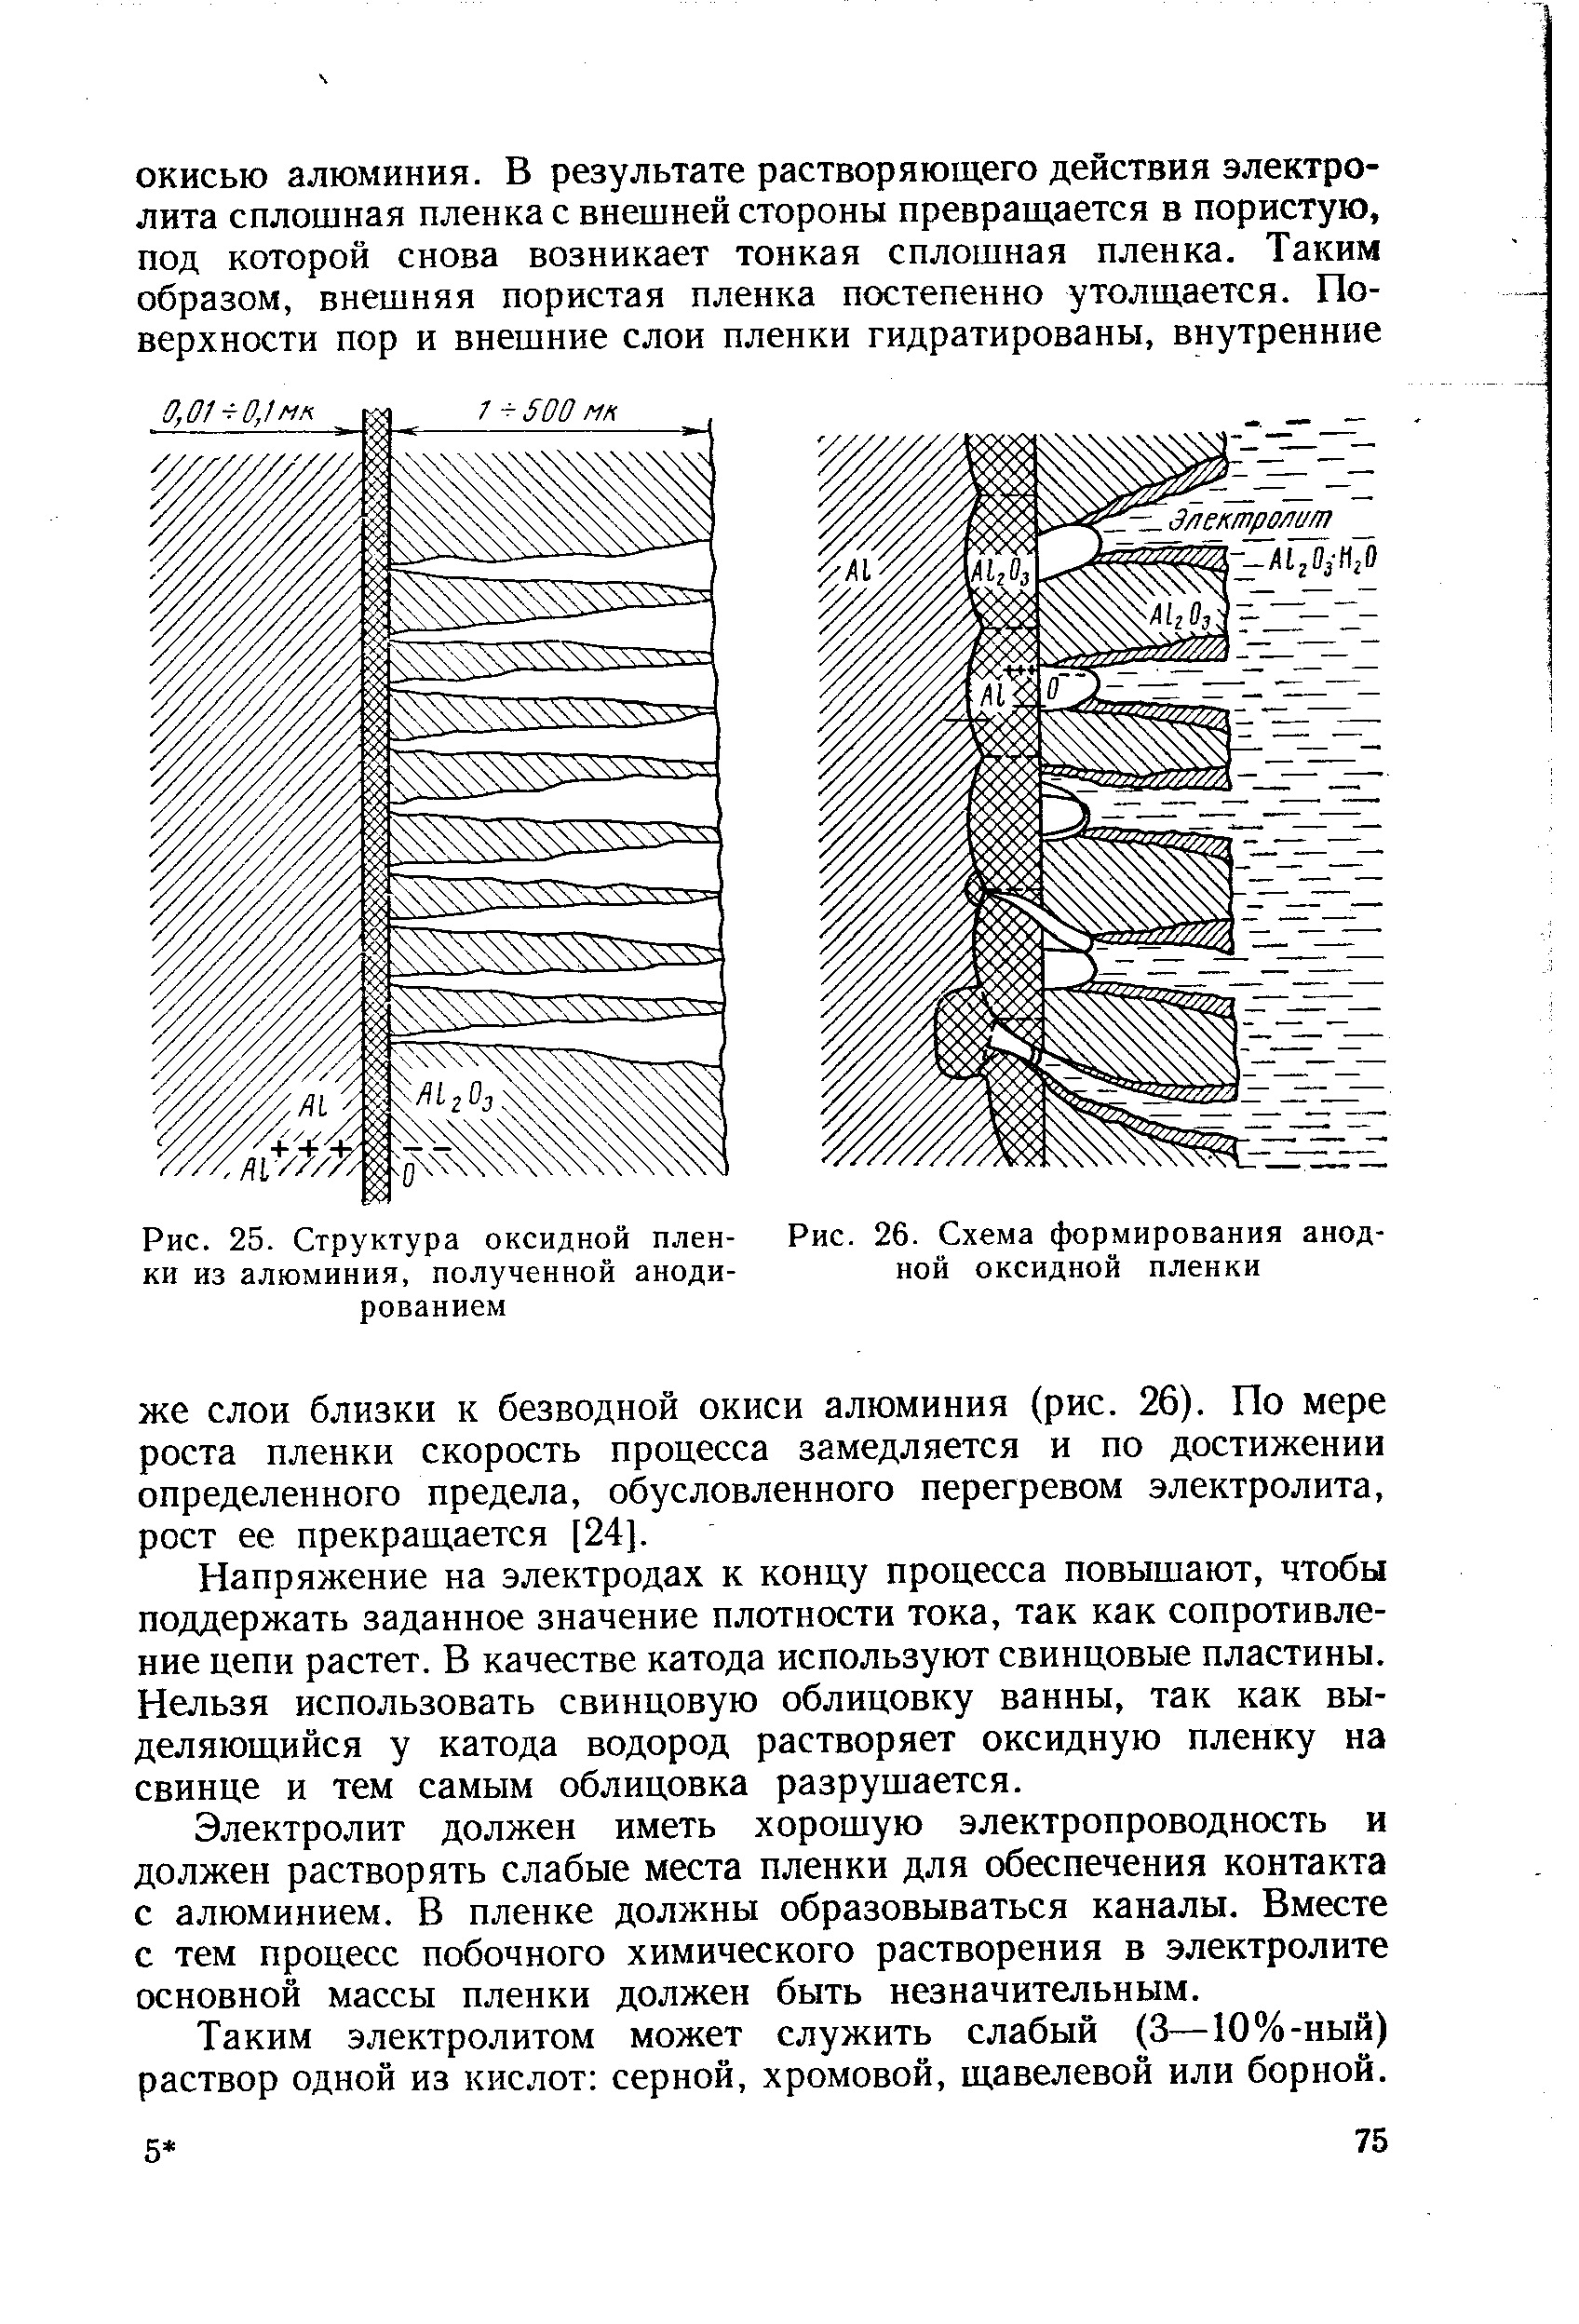 Рис. 26. Схема формирования анодной оксидной пленки
